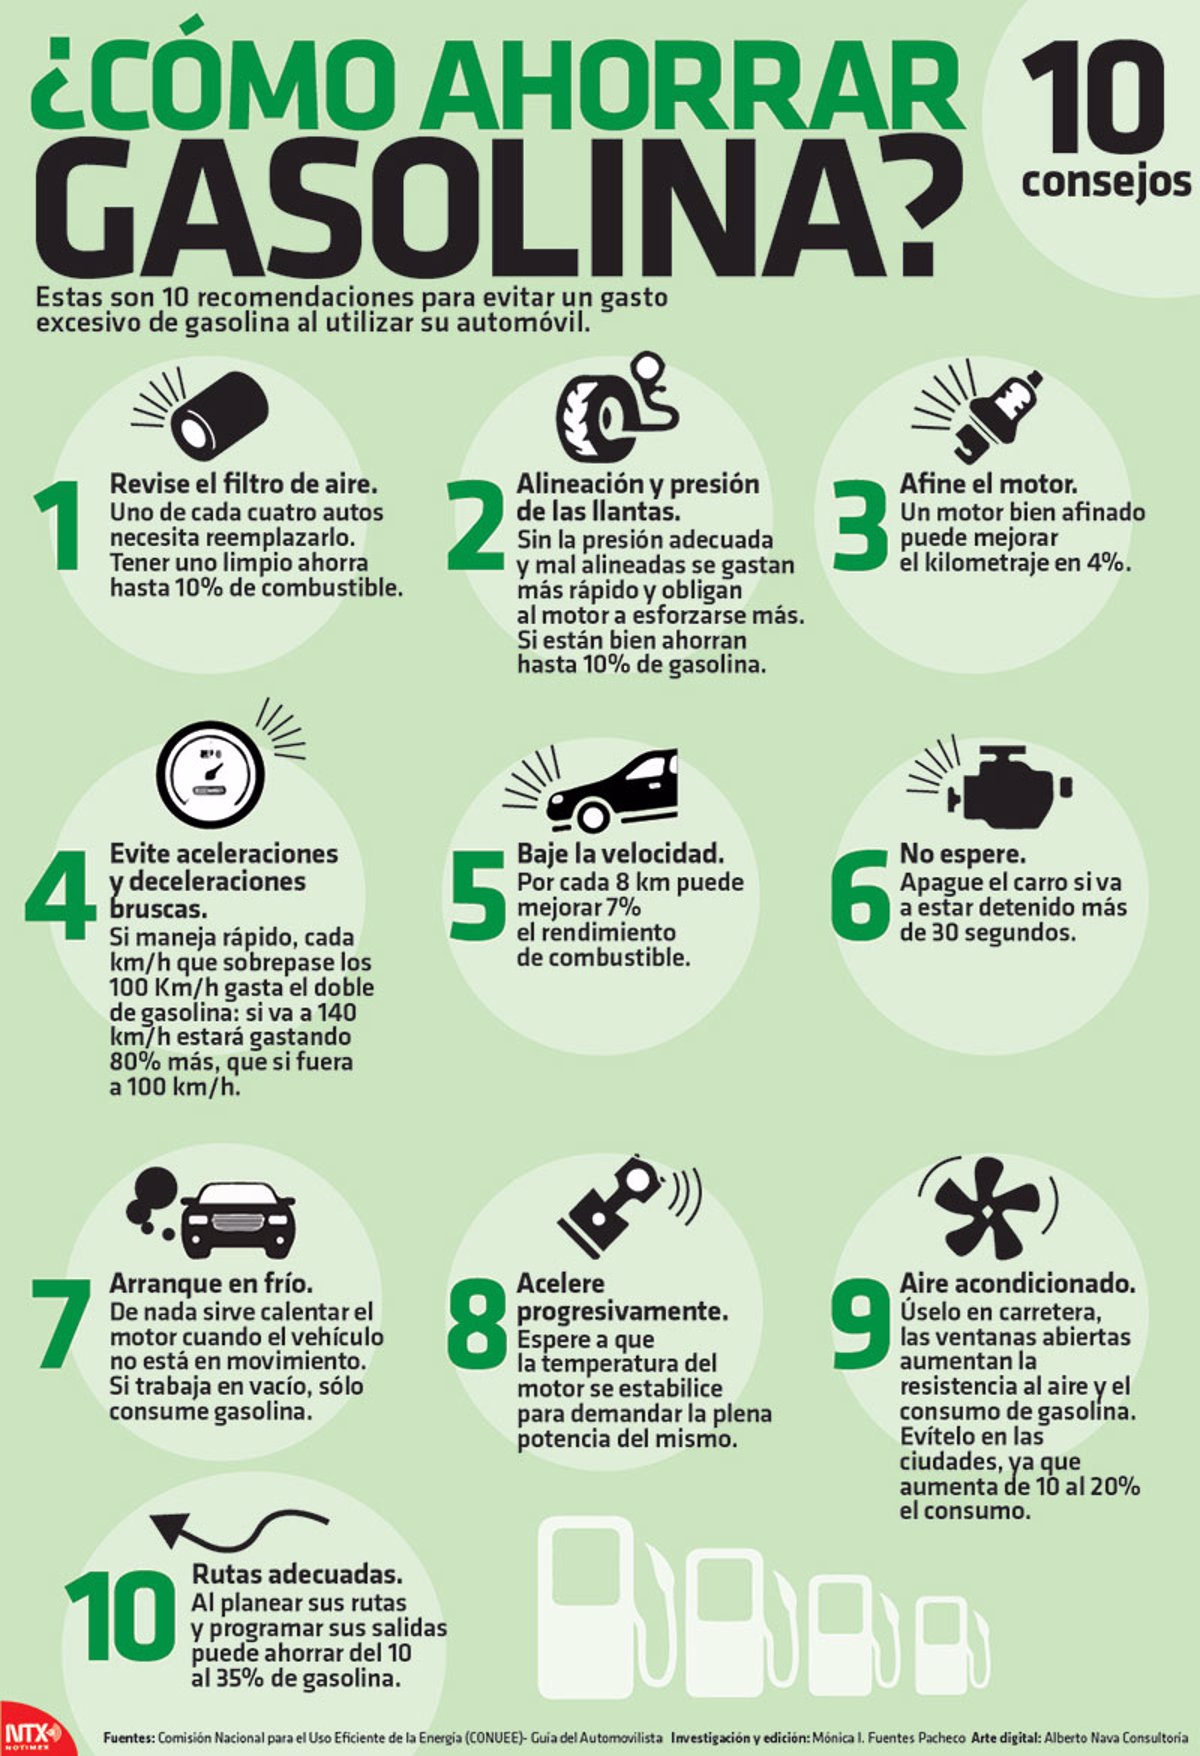 10 consejos infalibles para ahorrar gasolina en tu auto y cuidar el planeta